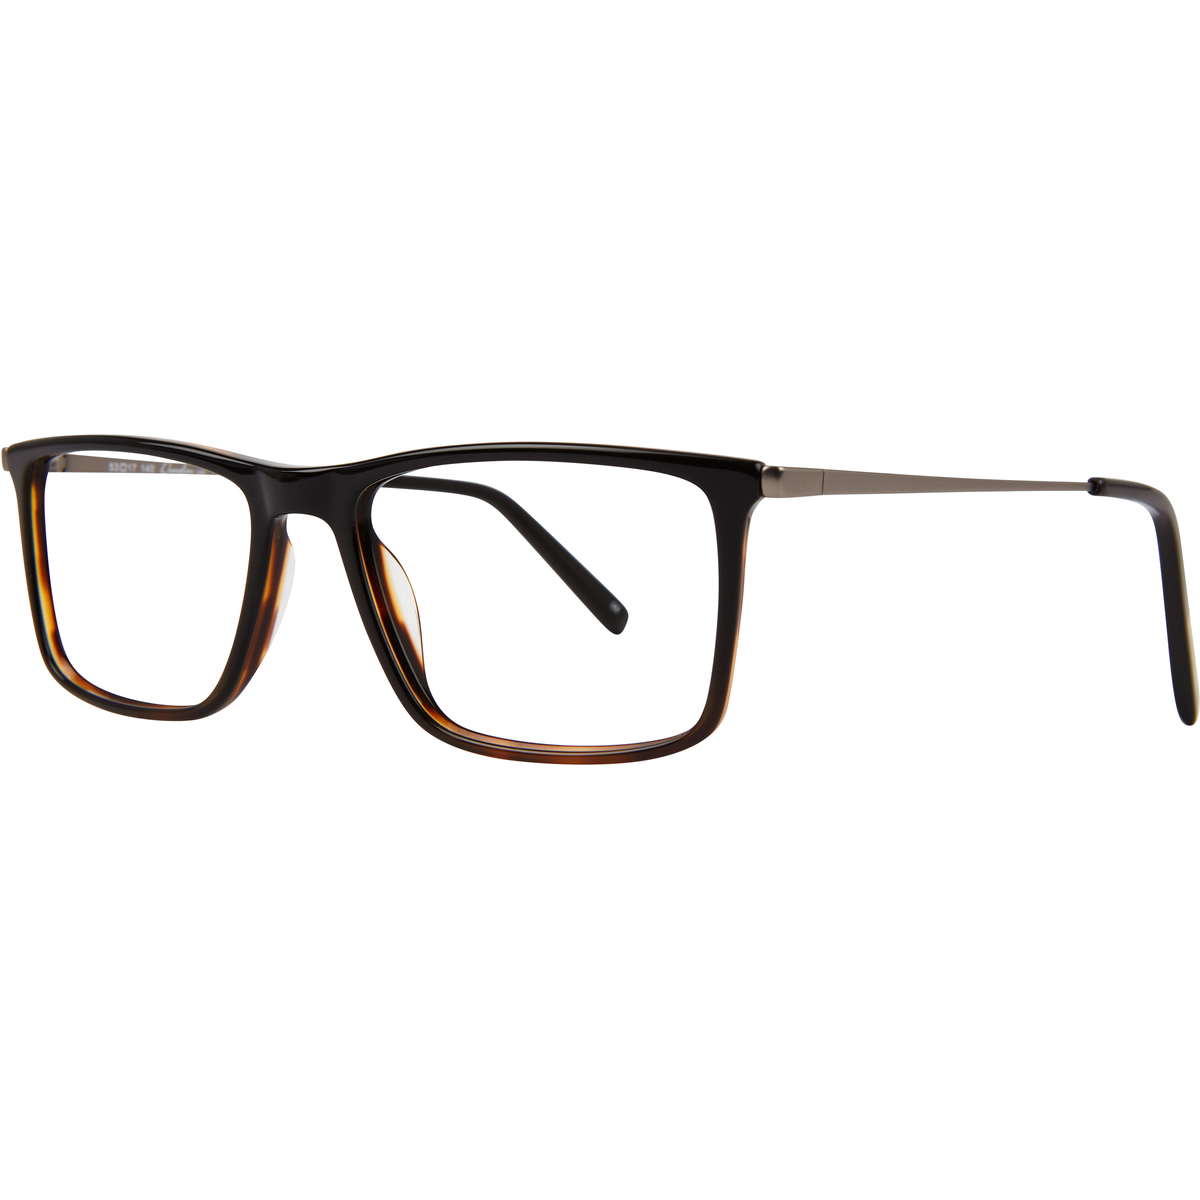 Paul Costelloe 5215 Glasses | Buy Glasses, Glasses Frames & Sunglasses ...